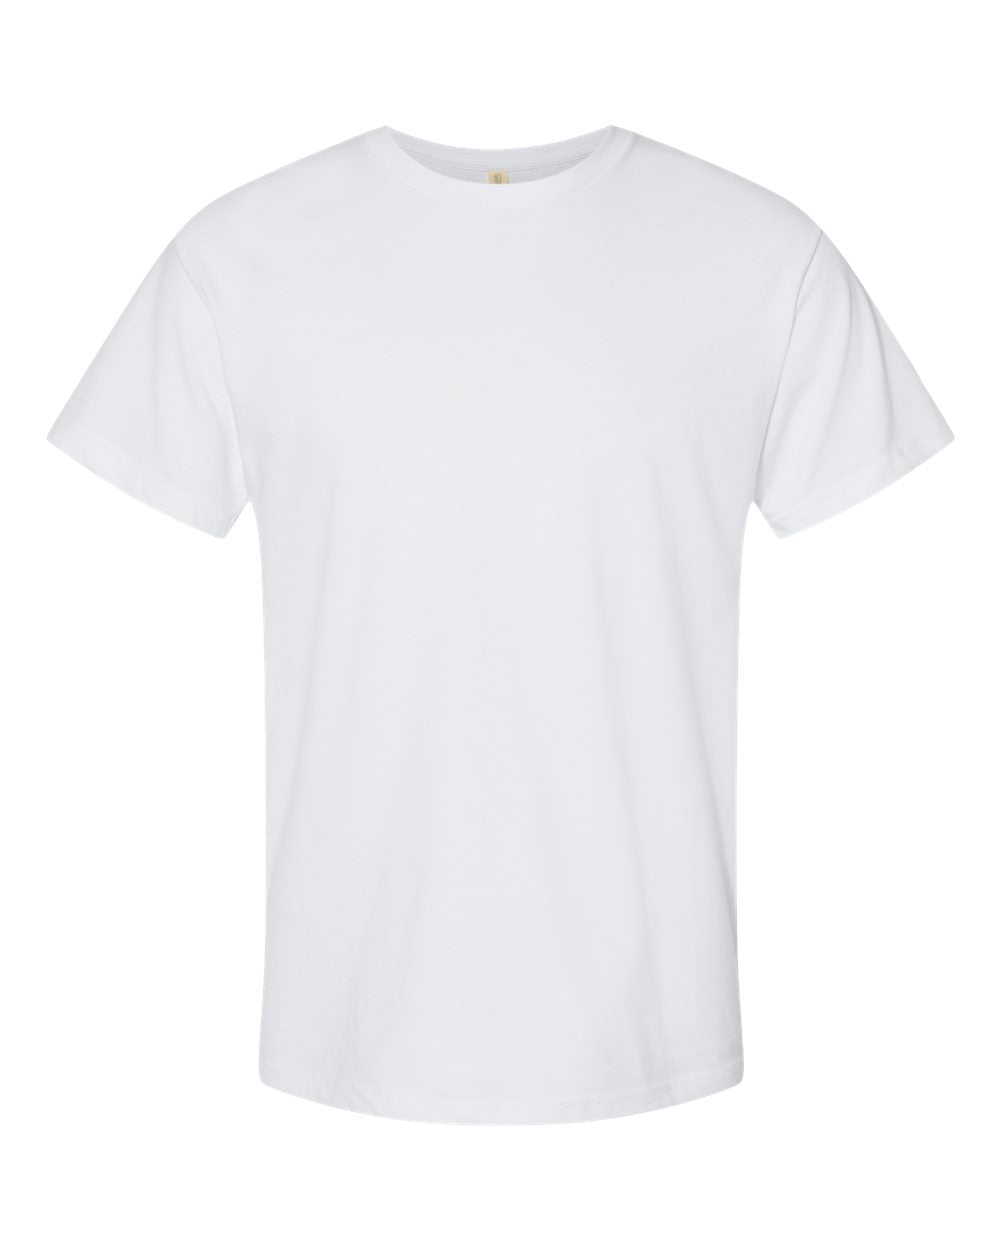 Next Level - Unisex Eco Heavyweight T-Shirt - 4600